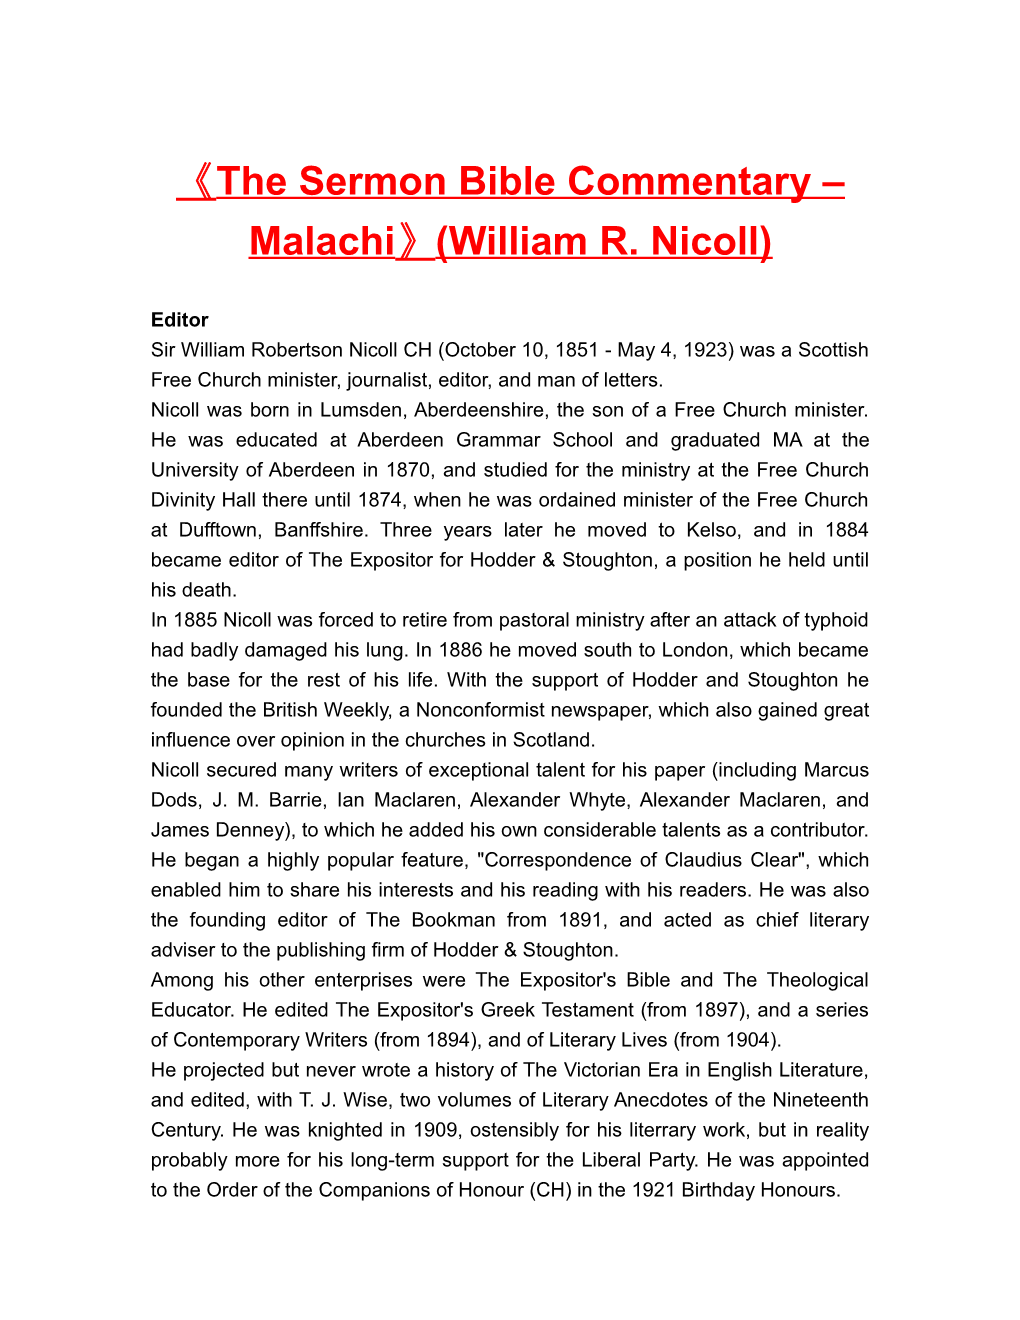 The Sermon Bible Commentary Malachi (William R. Nicoll)